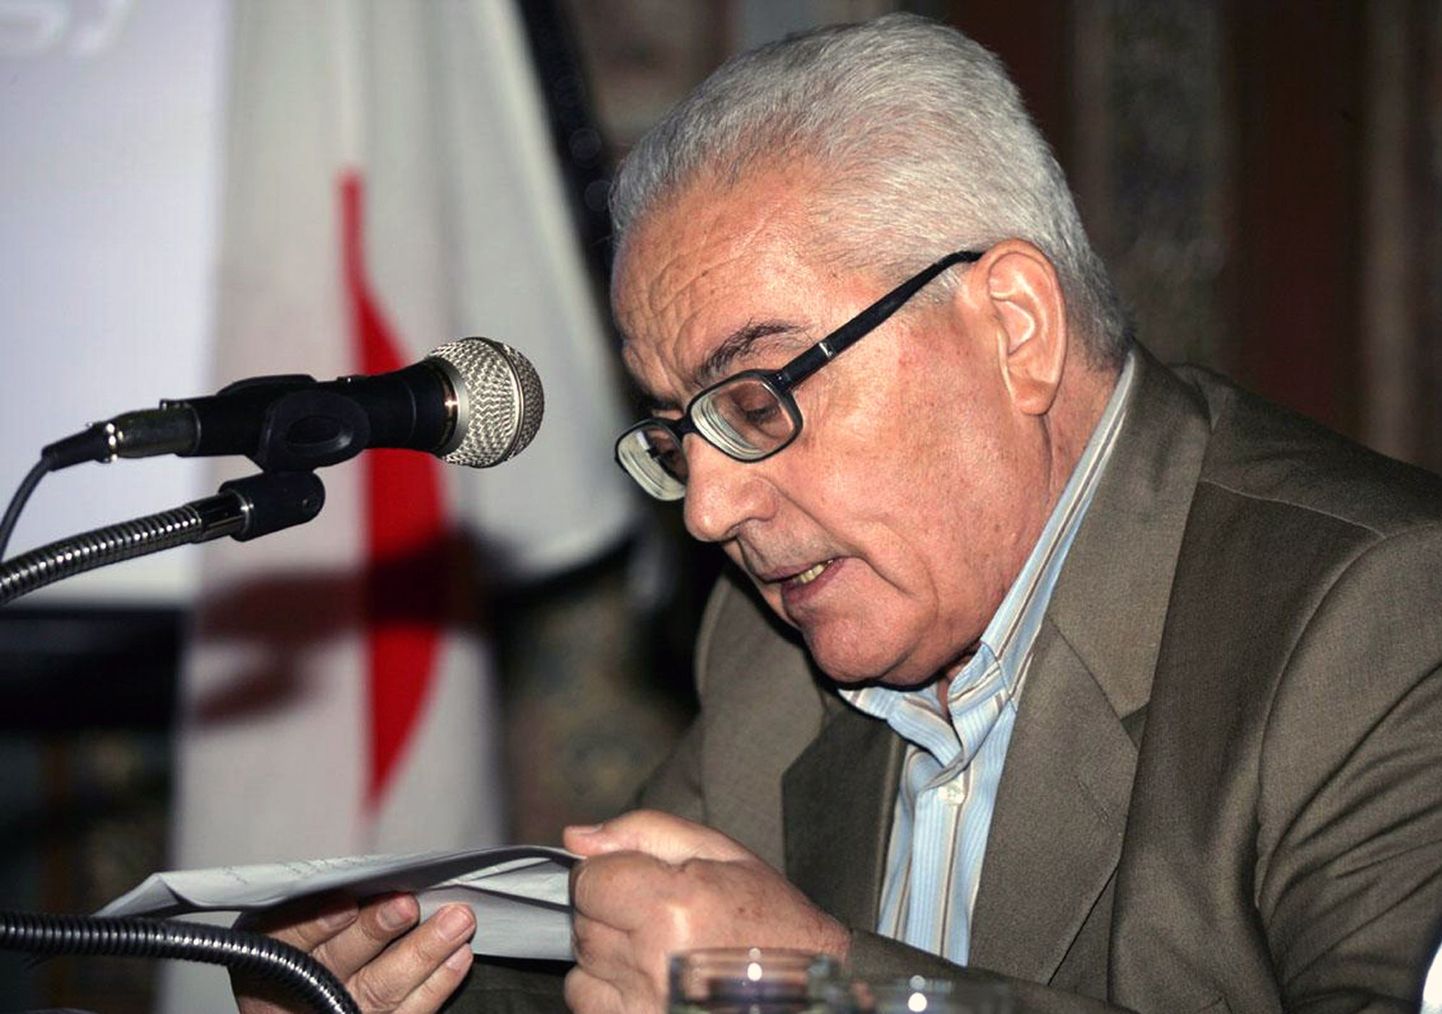 Süüria arheoloog Khaled al-Asaad.